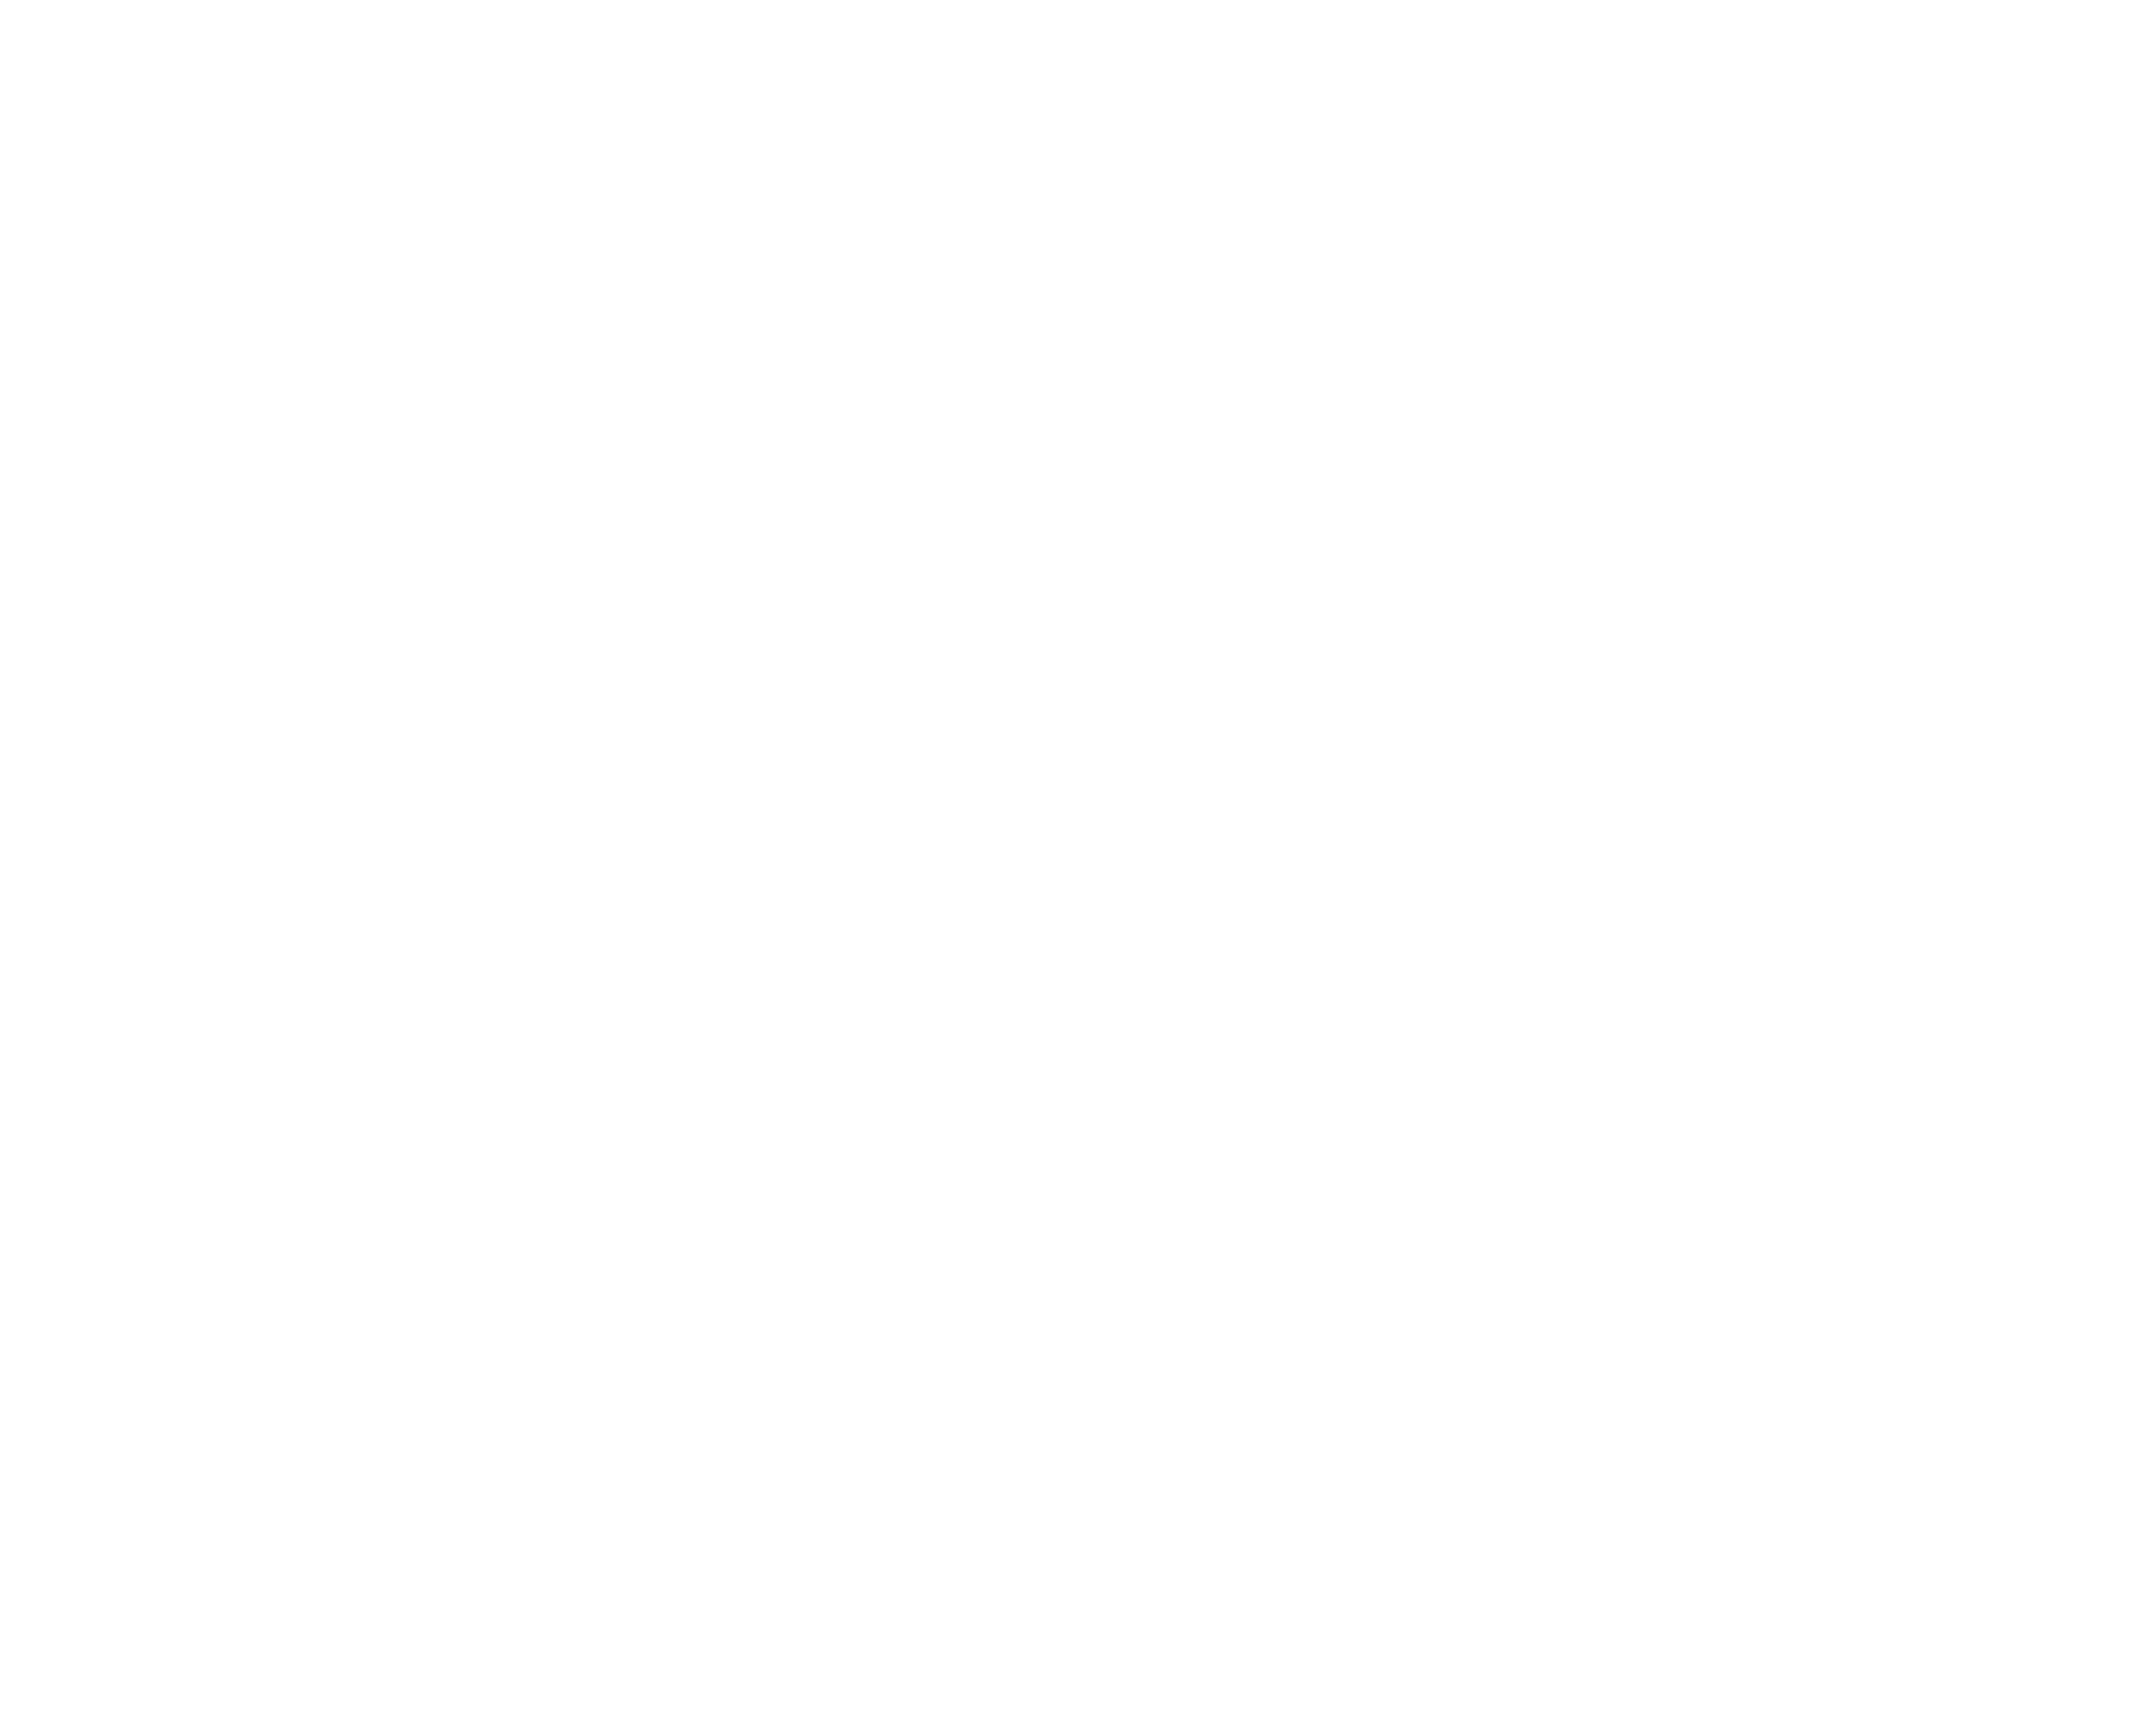 Renee Montgomery